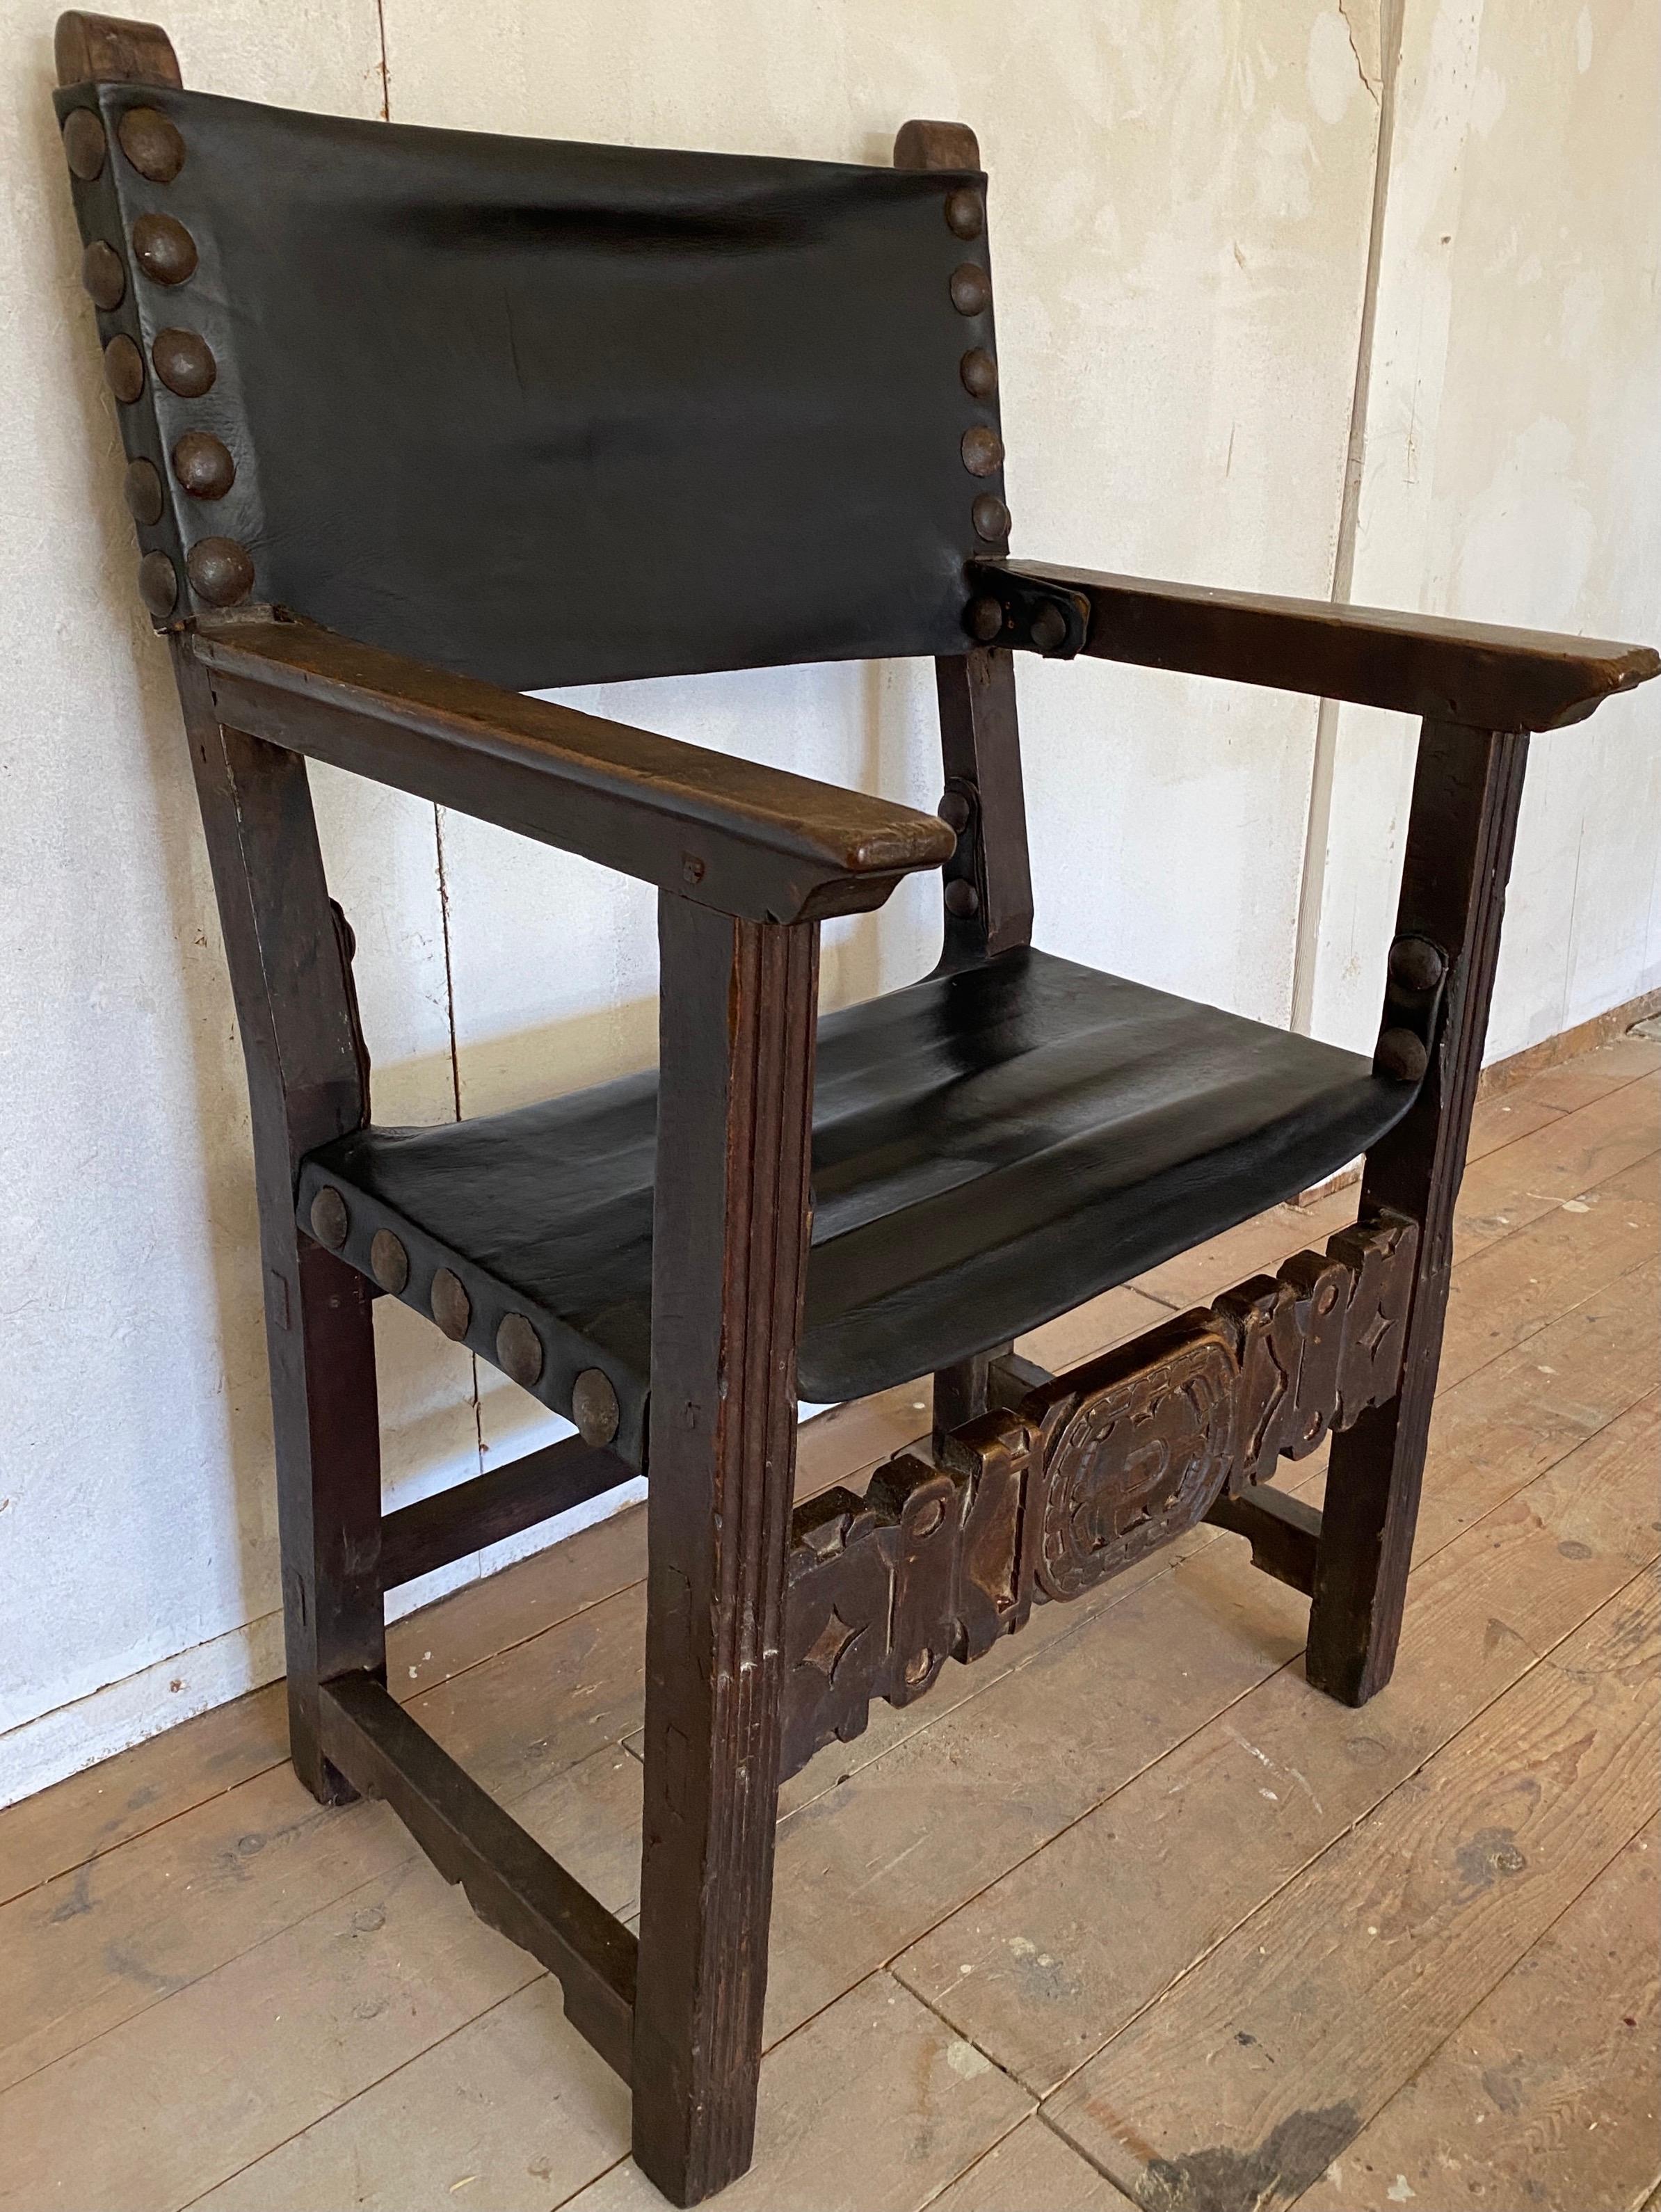 Cette chaise à trône en noyer espagnol avec un large siège a été fabriquée vers 1700. Fabriquée en noyer bien sculpté mais simplement travaillée, la chaise est centrée sur une assise et un dossier recouverts de cuir avec de grandes têtes de clous